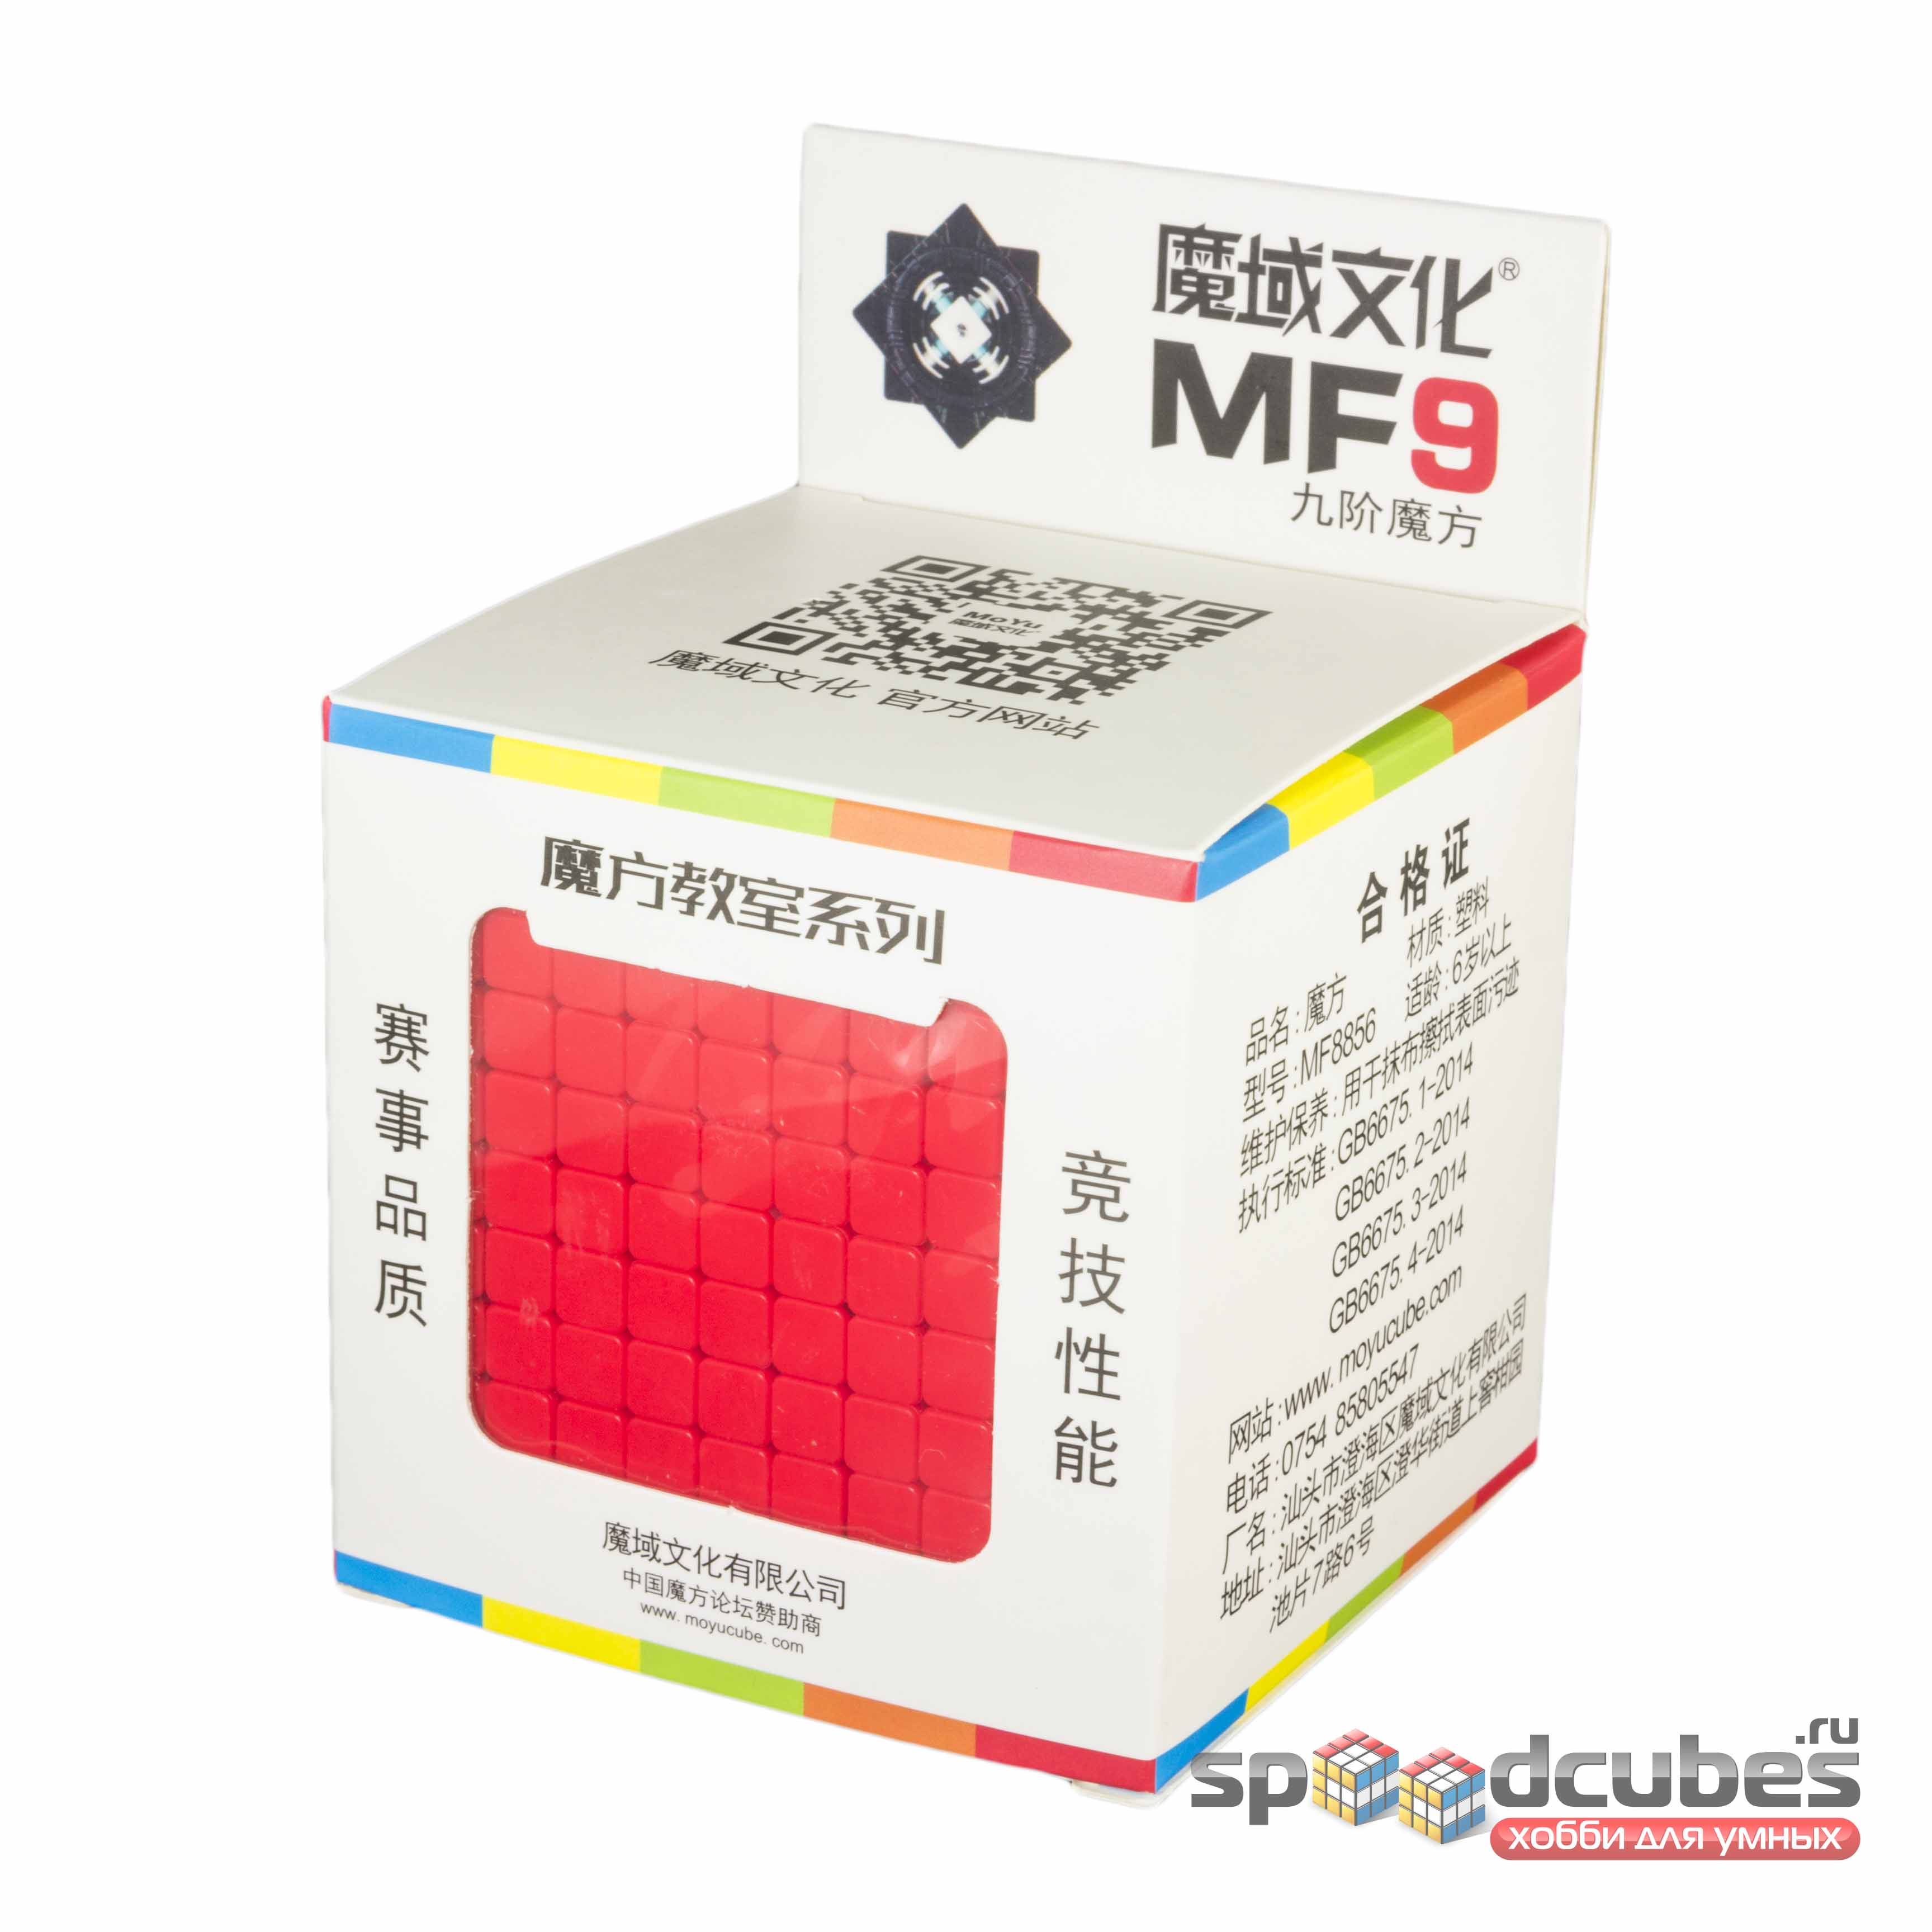 Moyu 9x9x9 Mofangjiaoshi Mf9 Color 3